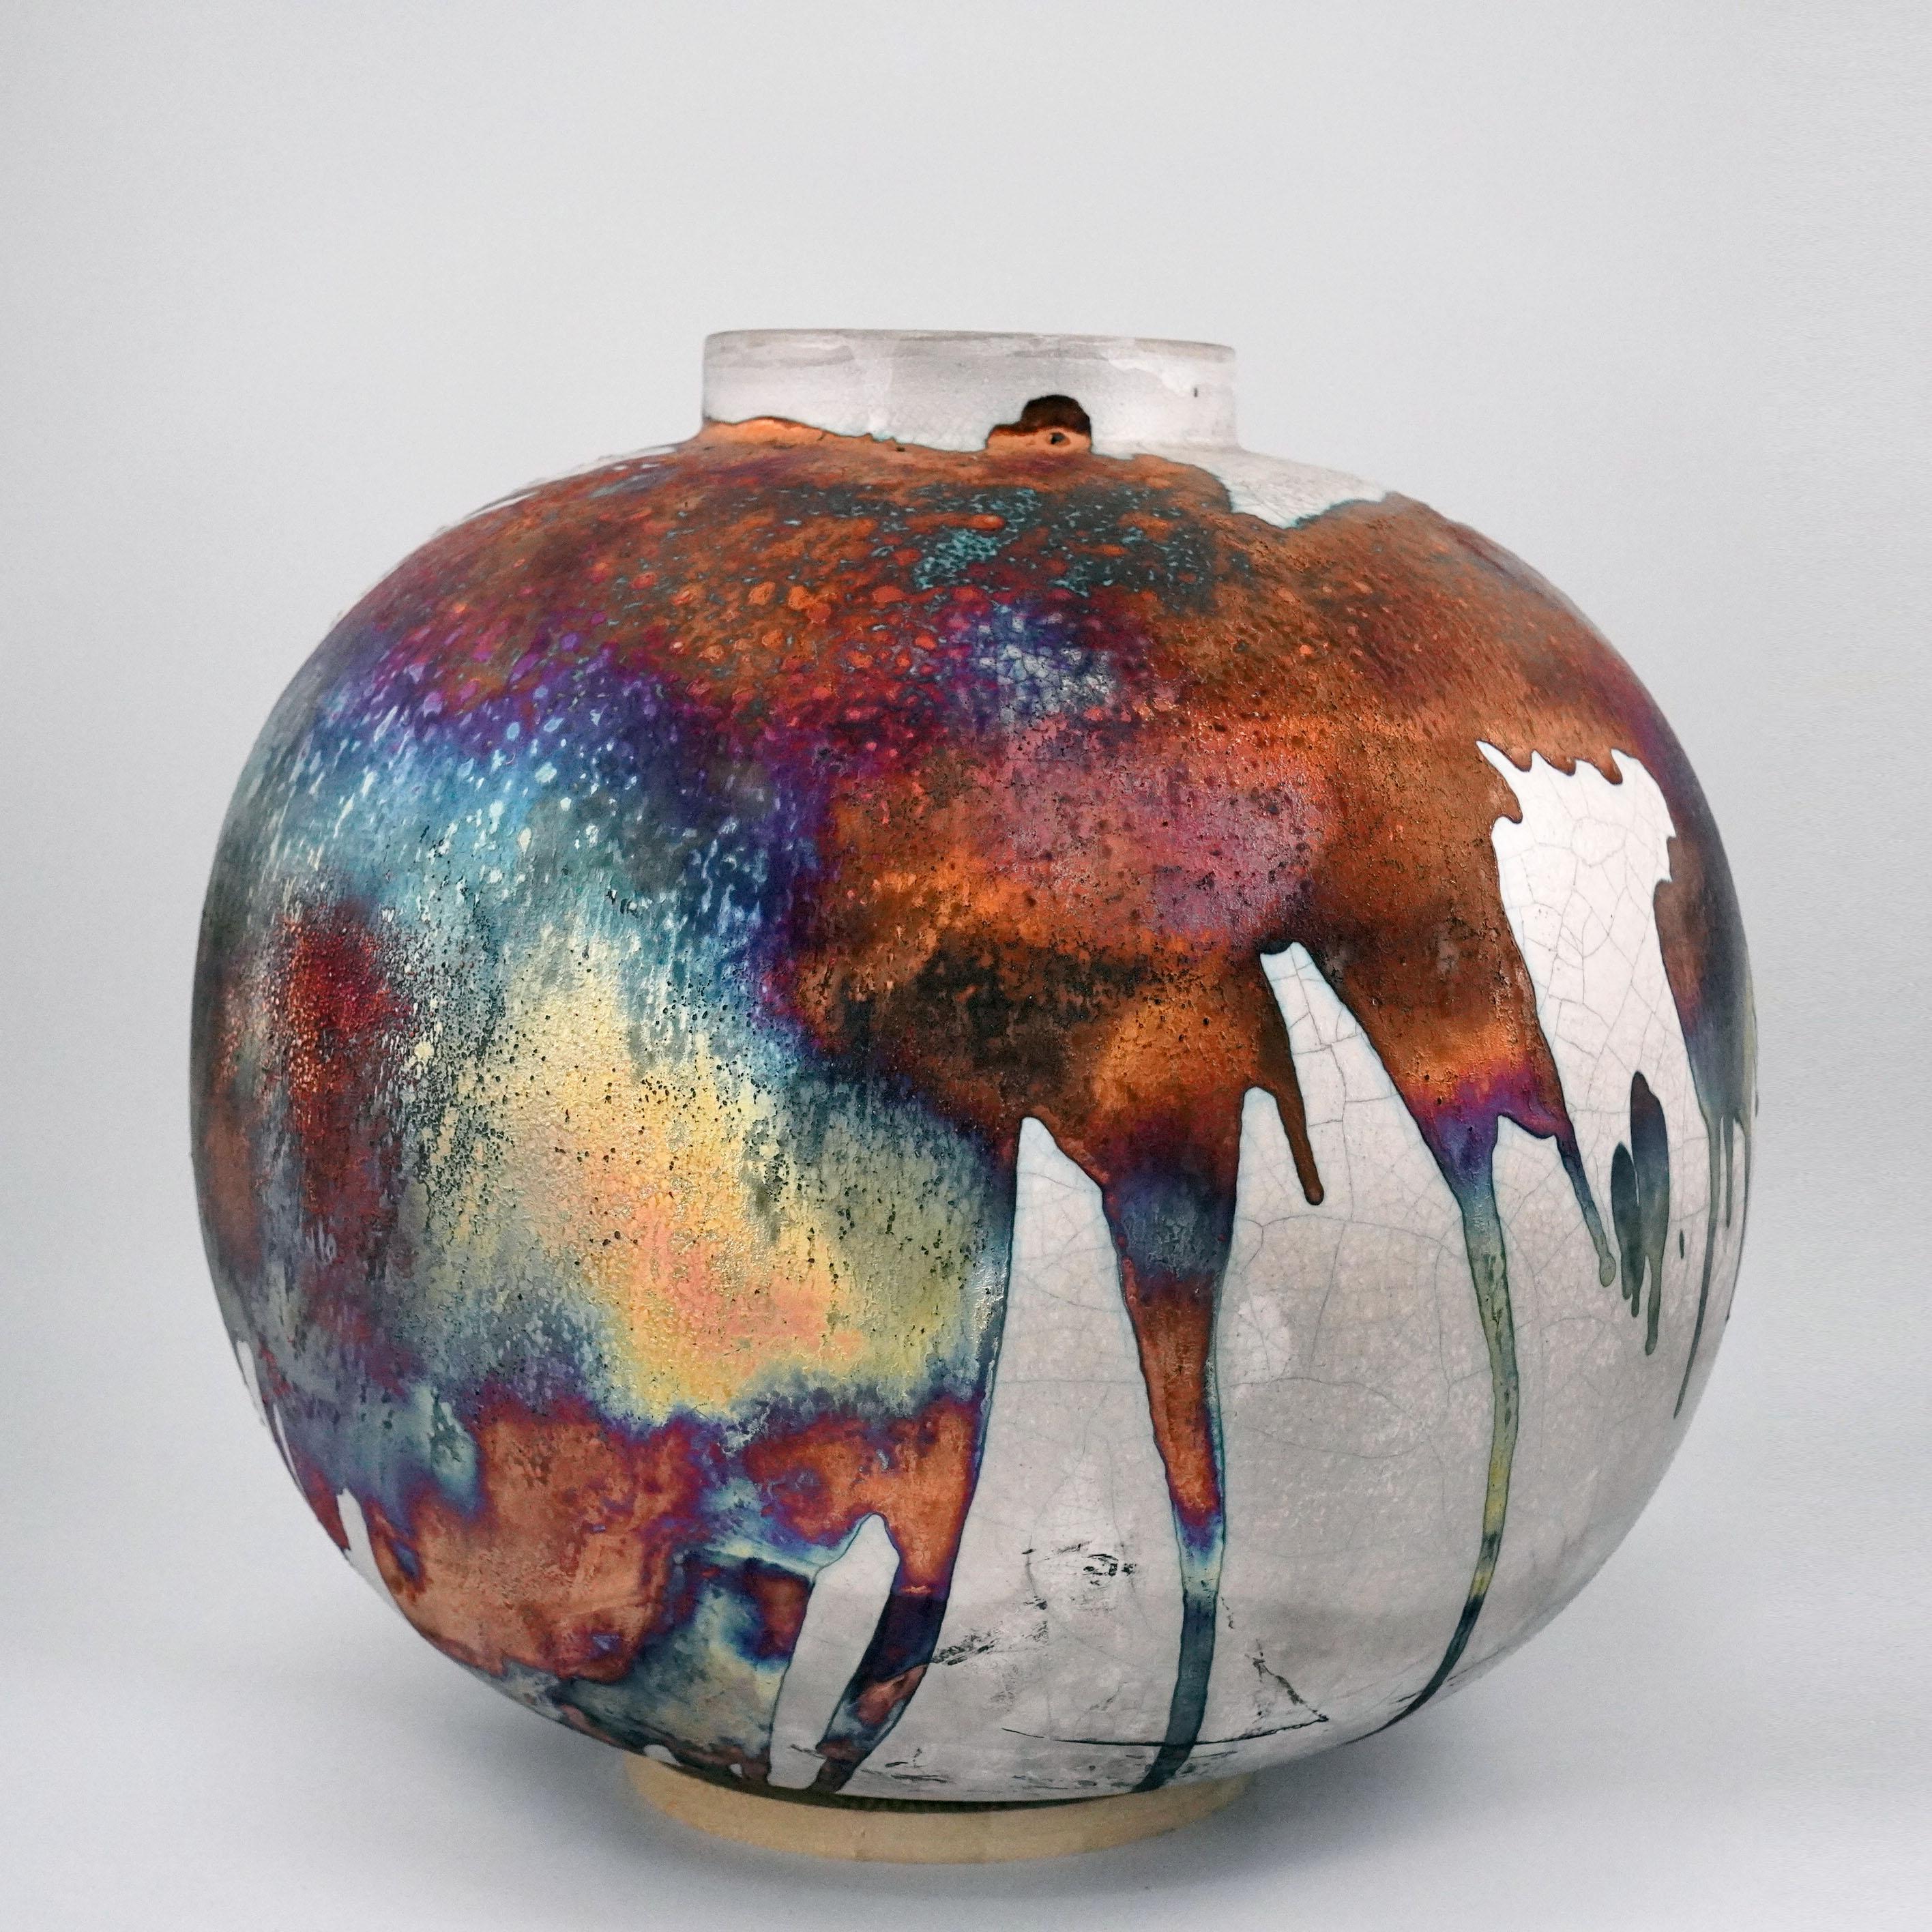 Ein faszinierender Anblick, sobald die regenbogenartigen Patinas ins Auge fallen. Die Globe XL Vase ist ein rundes, geräumiges Stück, das mit der Raku-Technik hergestellt wird, was zu einer schönen, unvorhersehbaren Oberfläche führt. Diese Vase